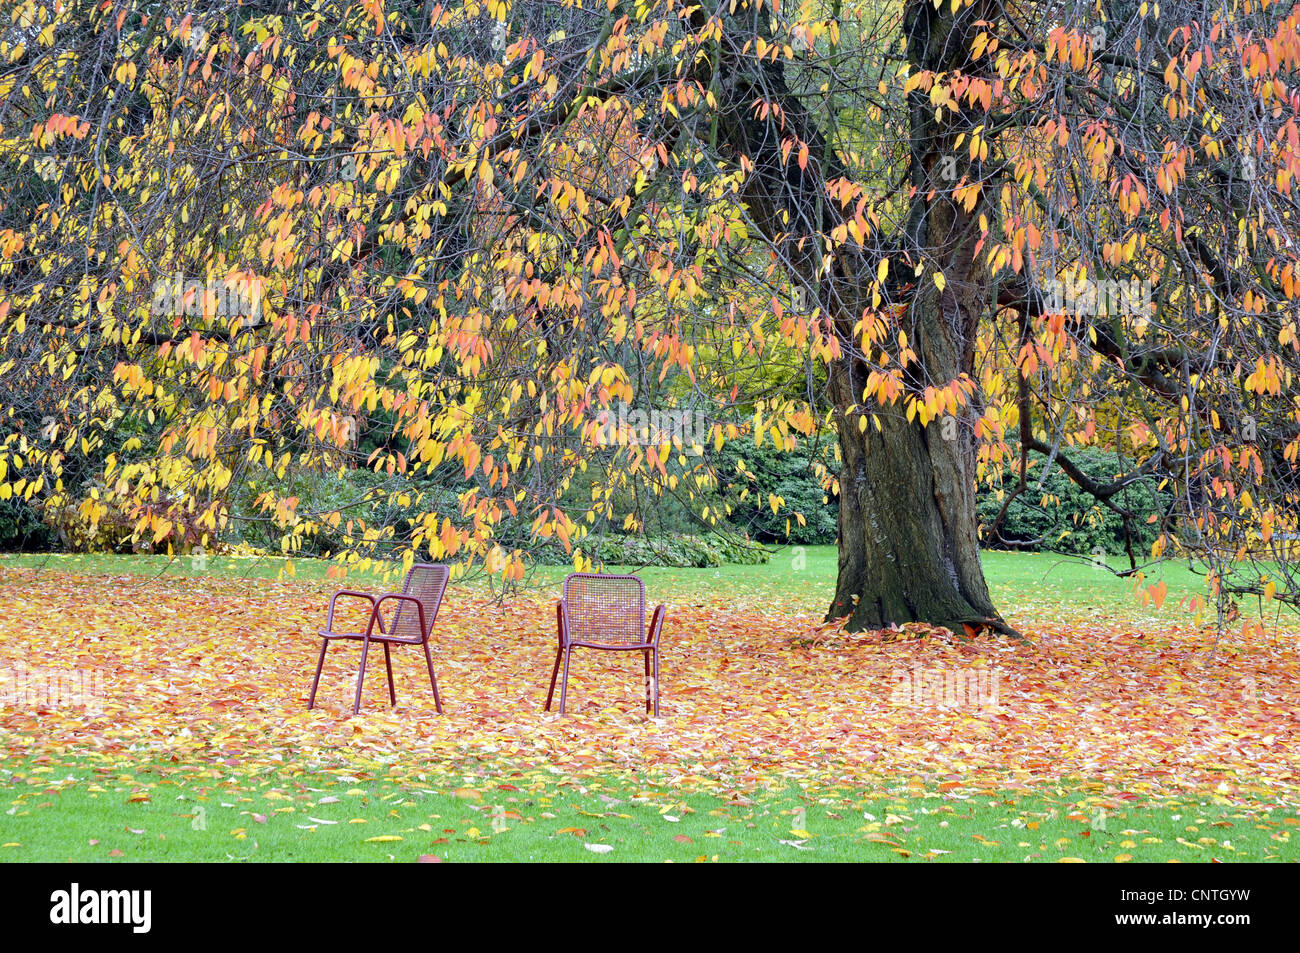 Wildkirsche, Süßkirsche, Gean, Mazzard (Prunus Avium), Herbst in einem Park mit zwei Gartenstühle, Deutschland Stockfoto